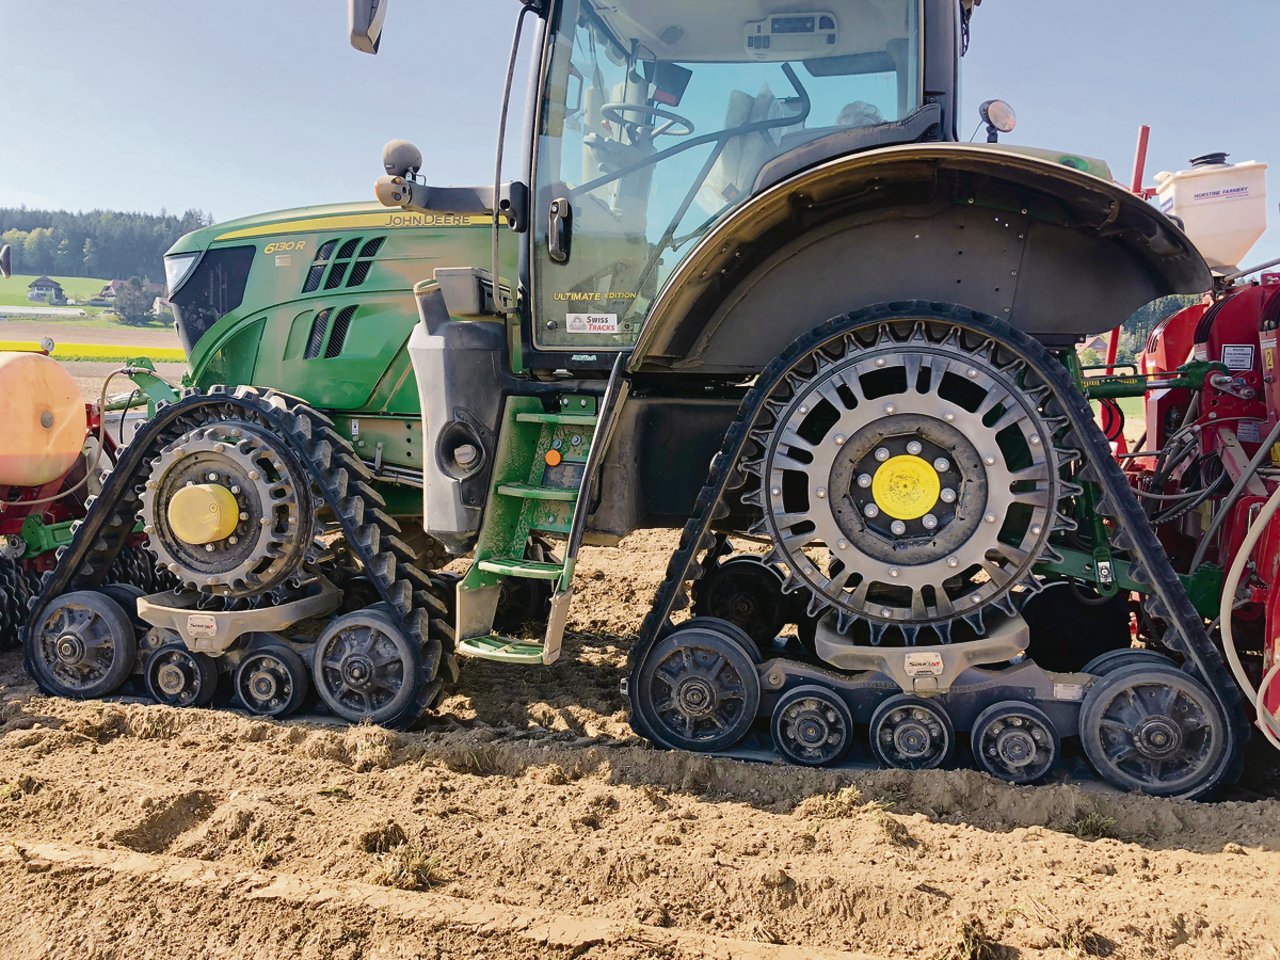 Mit einer Breite von 30,5 cm und einer Auflagefläche von 2,25 m ist der Bodendruck durch den 8,5-Tonnen-Traktor nur 375 g/cm2. 